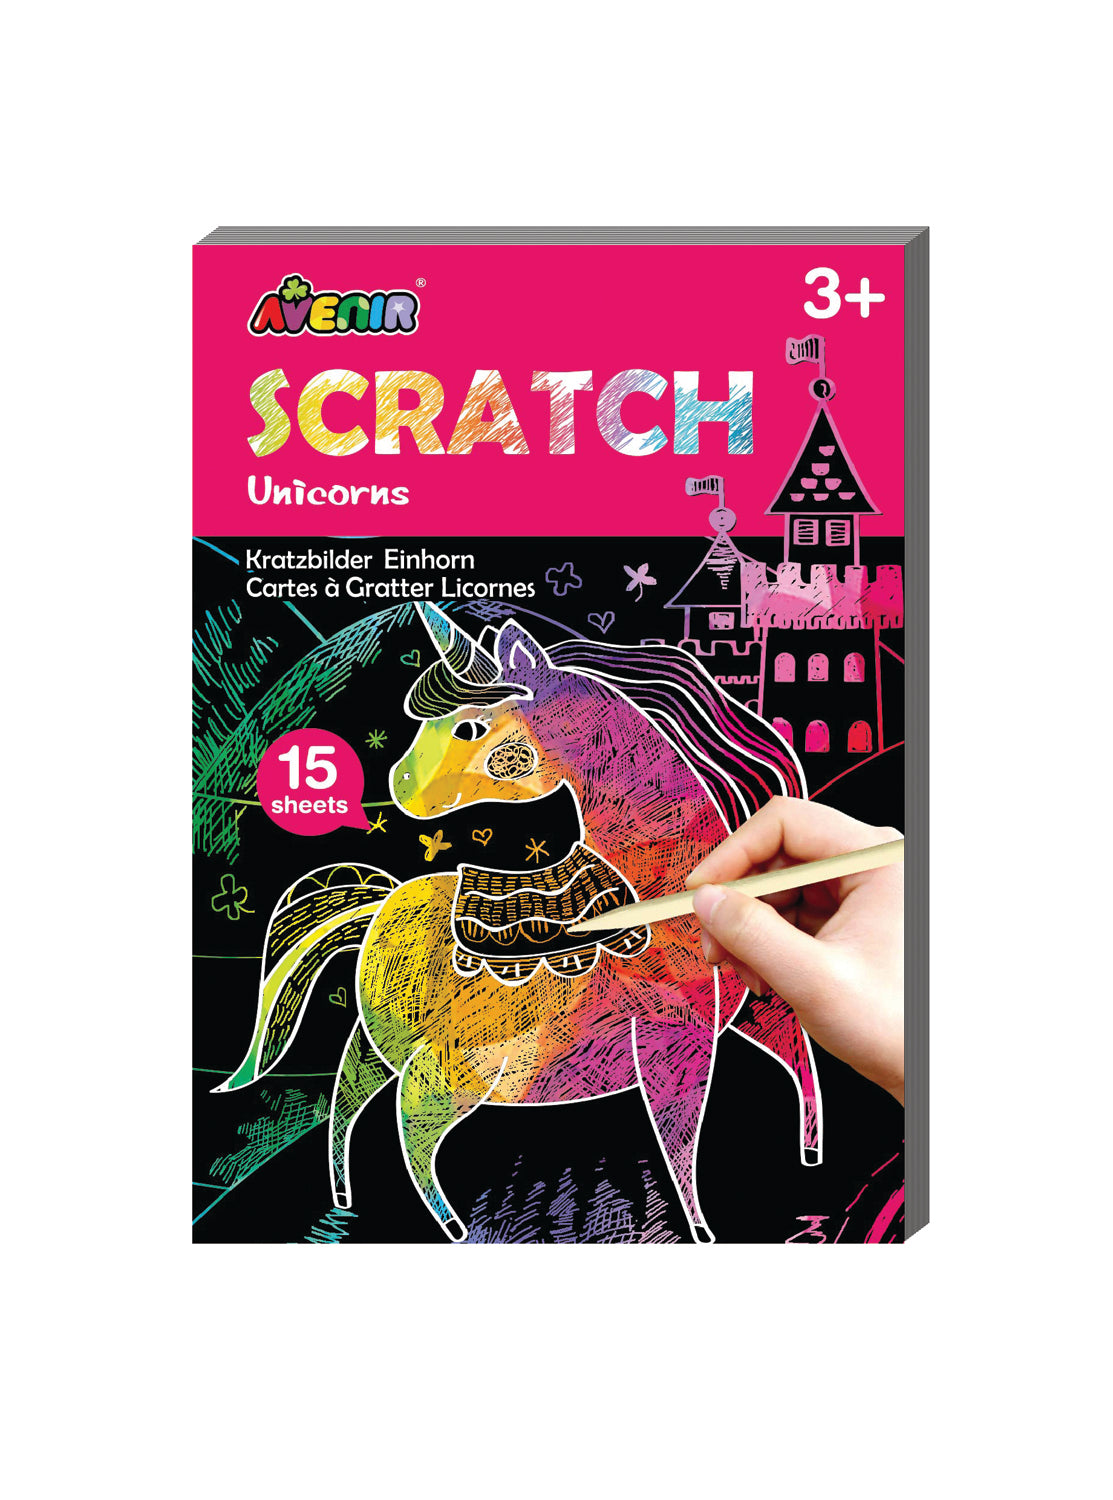 Mini Scratch Book - Ages 3+